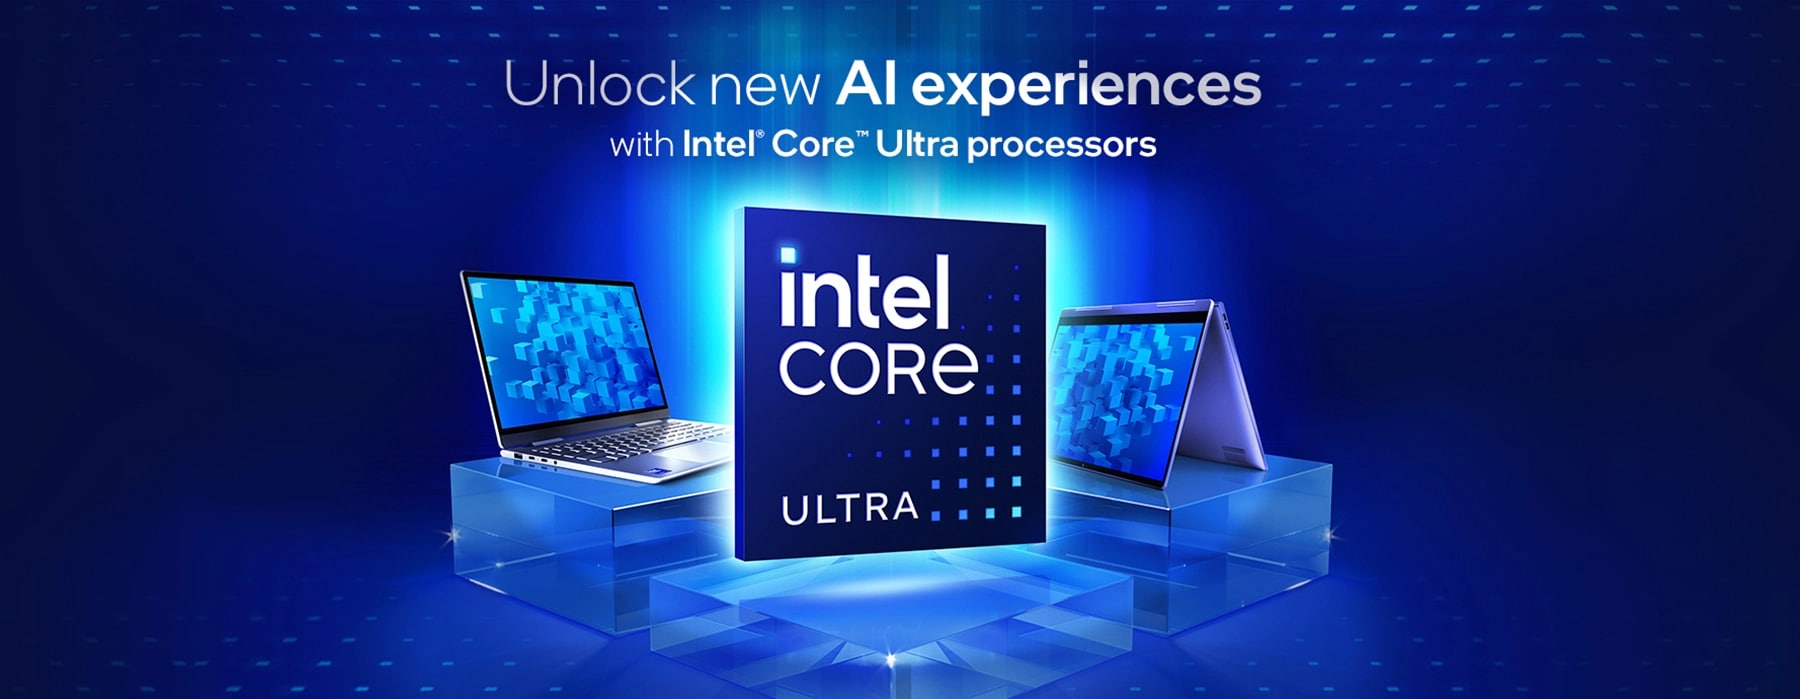 Core Ultra Processor Laptop